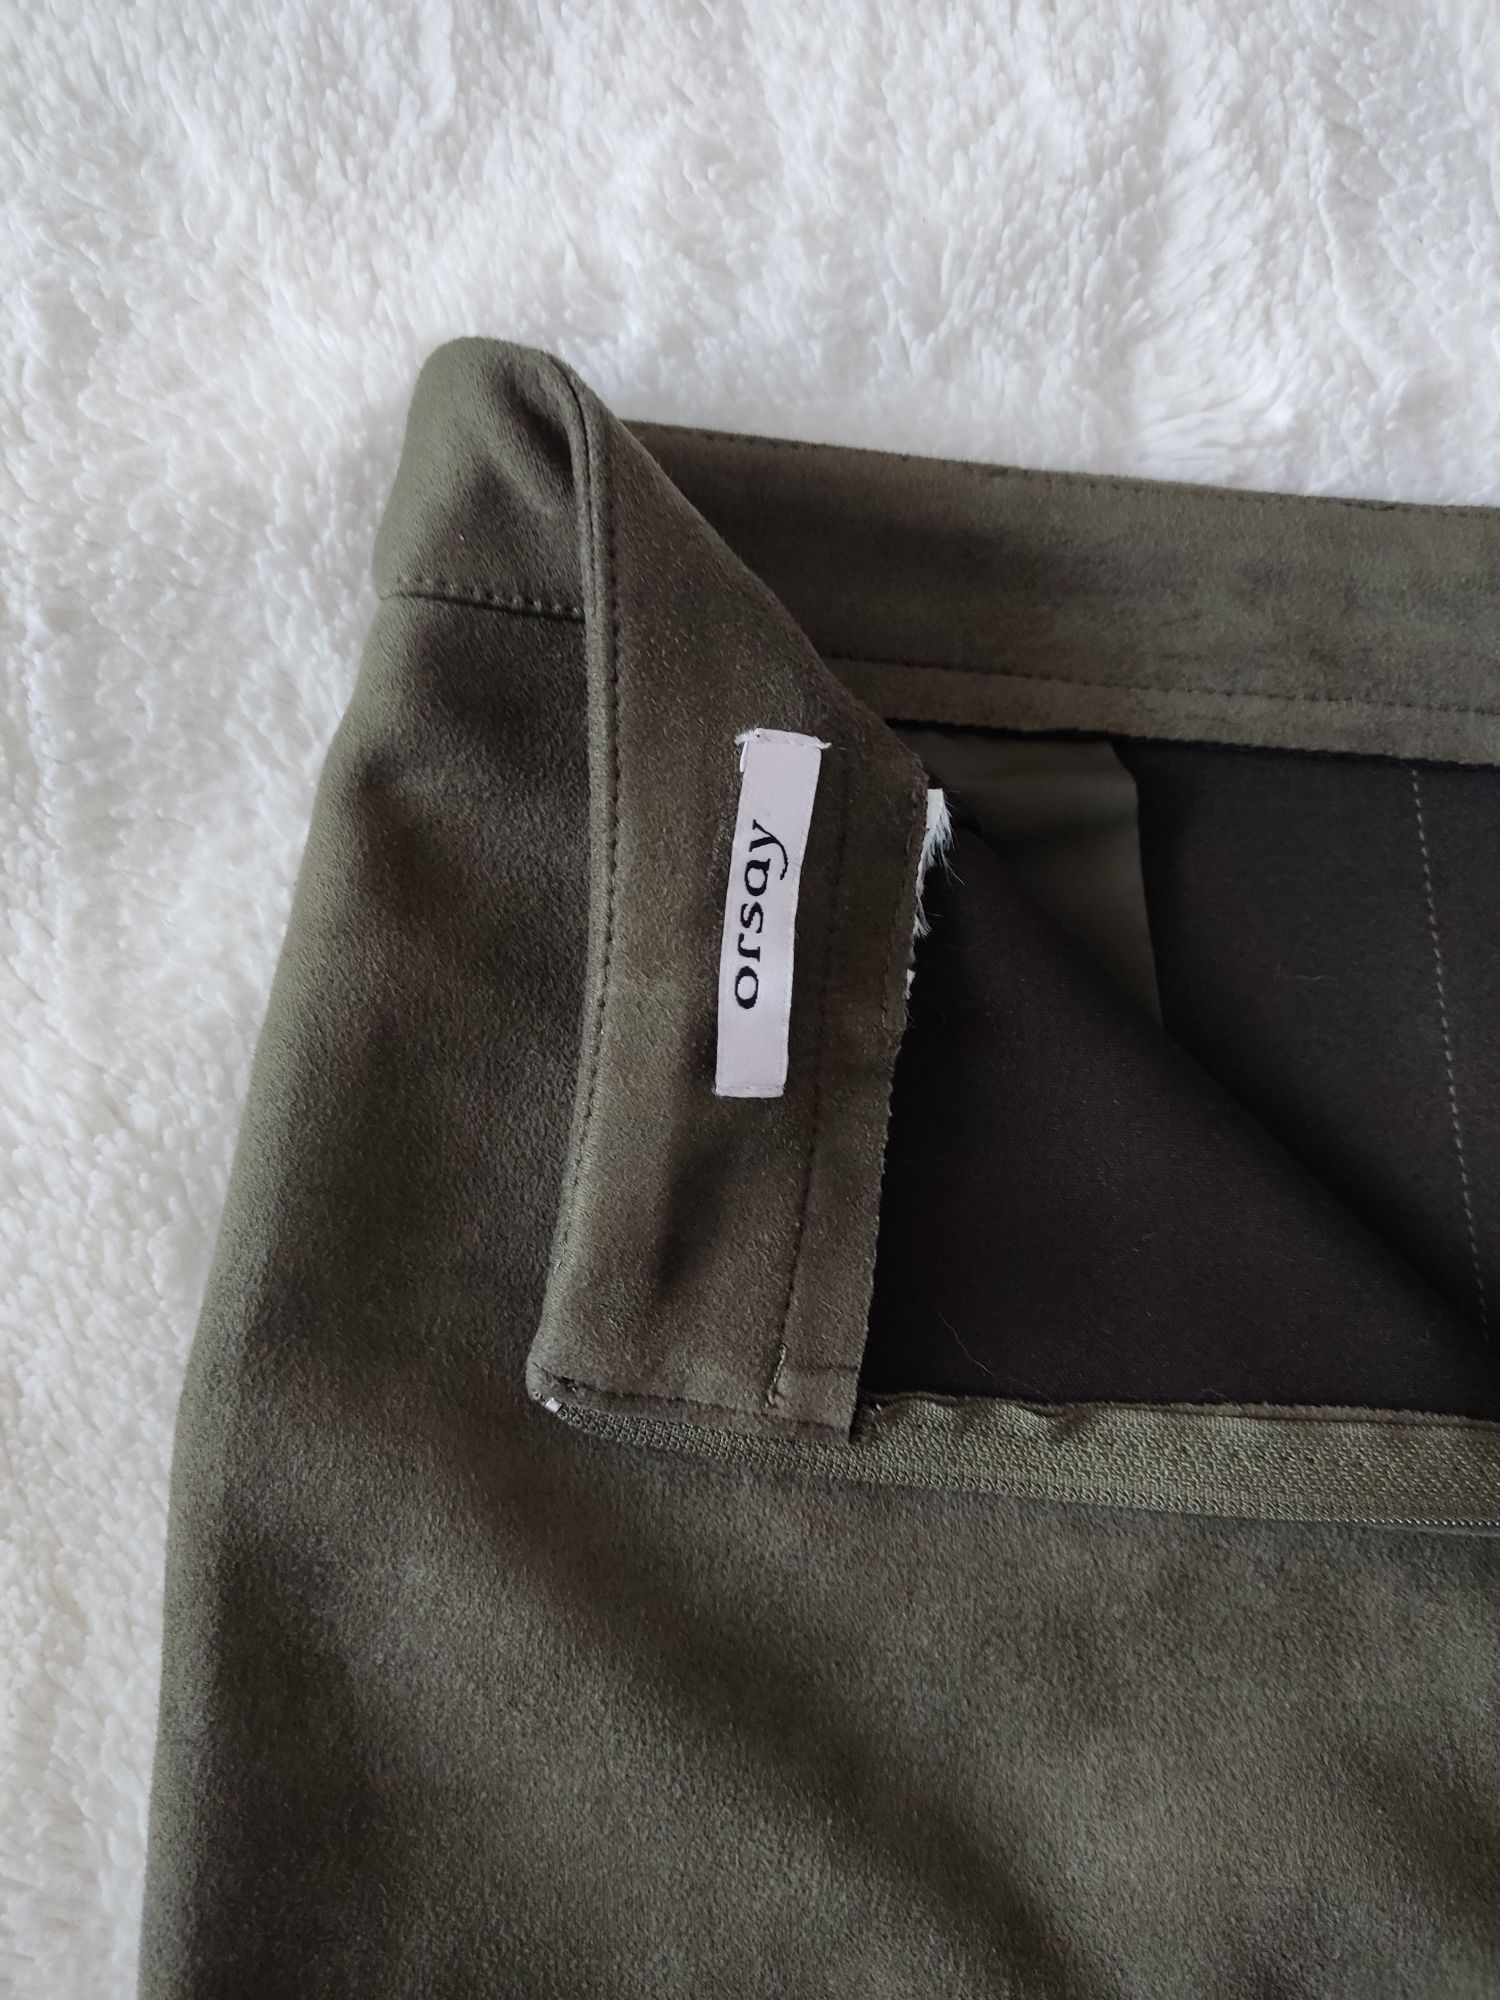 Orsay krótka spódnica zamszowa oliwkowa khaki elastyczna 38